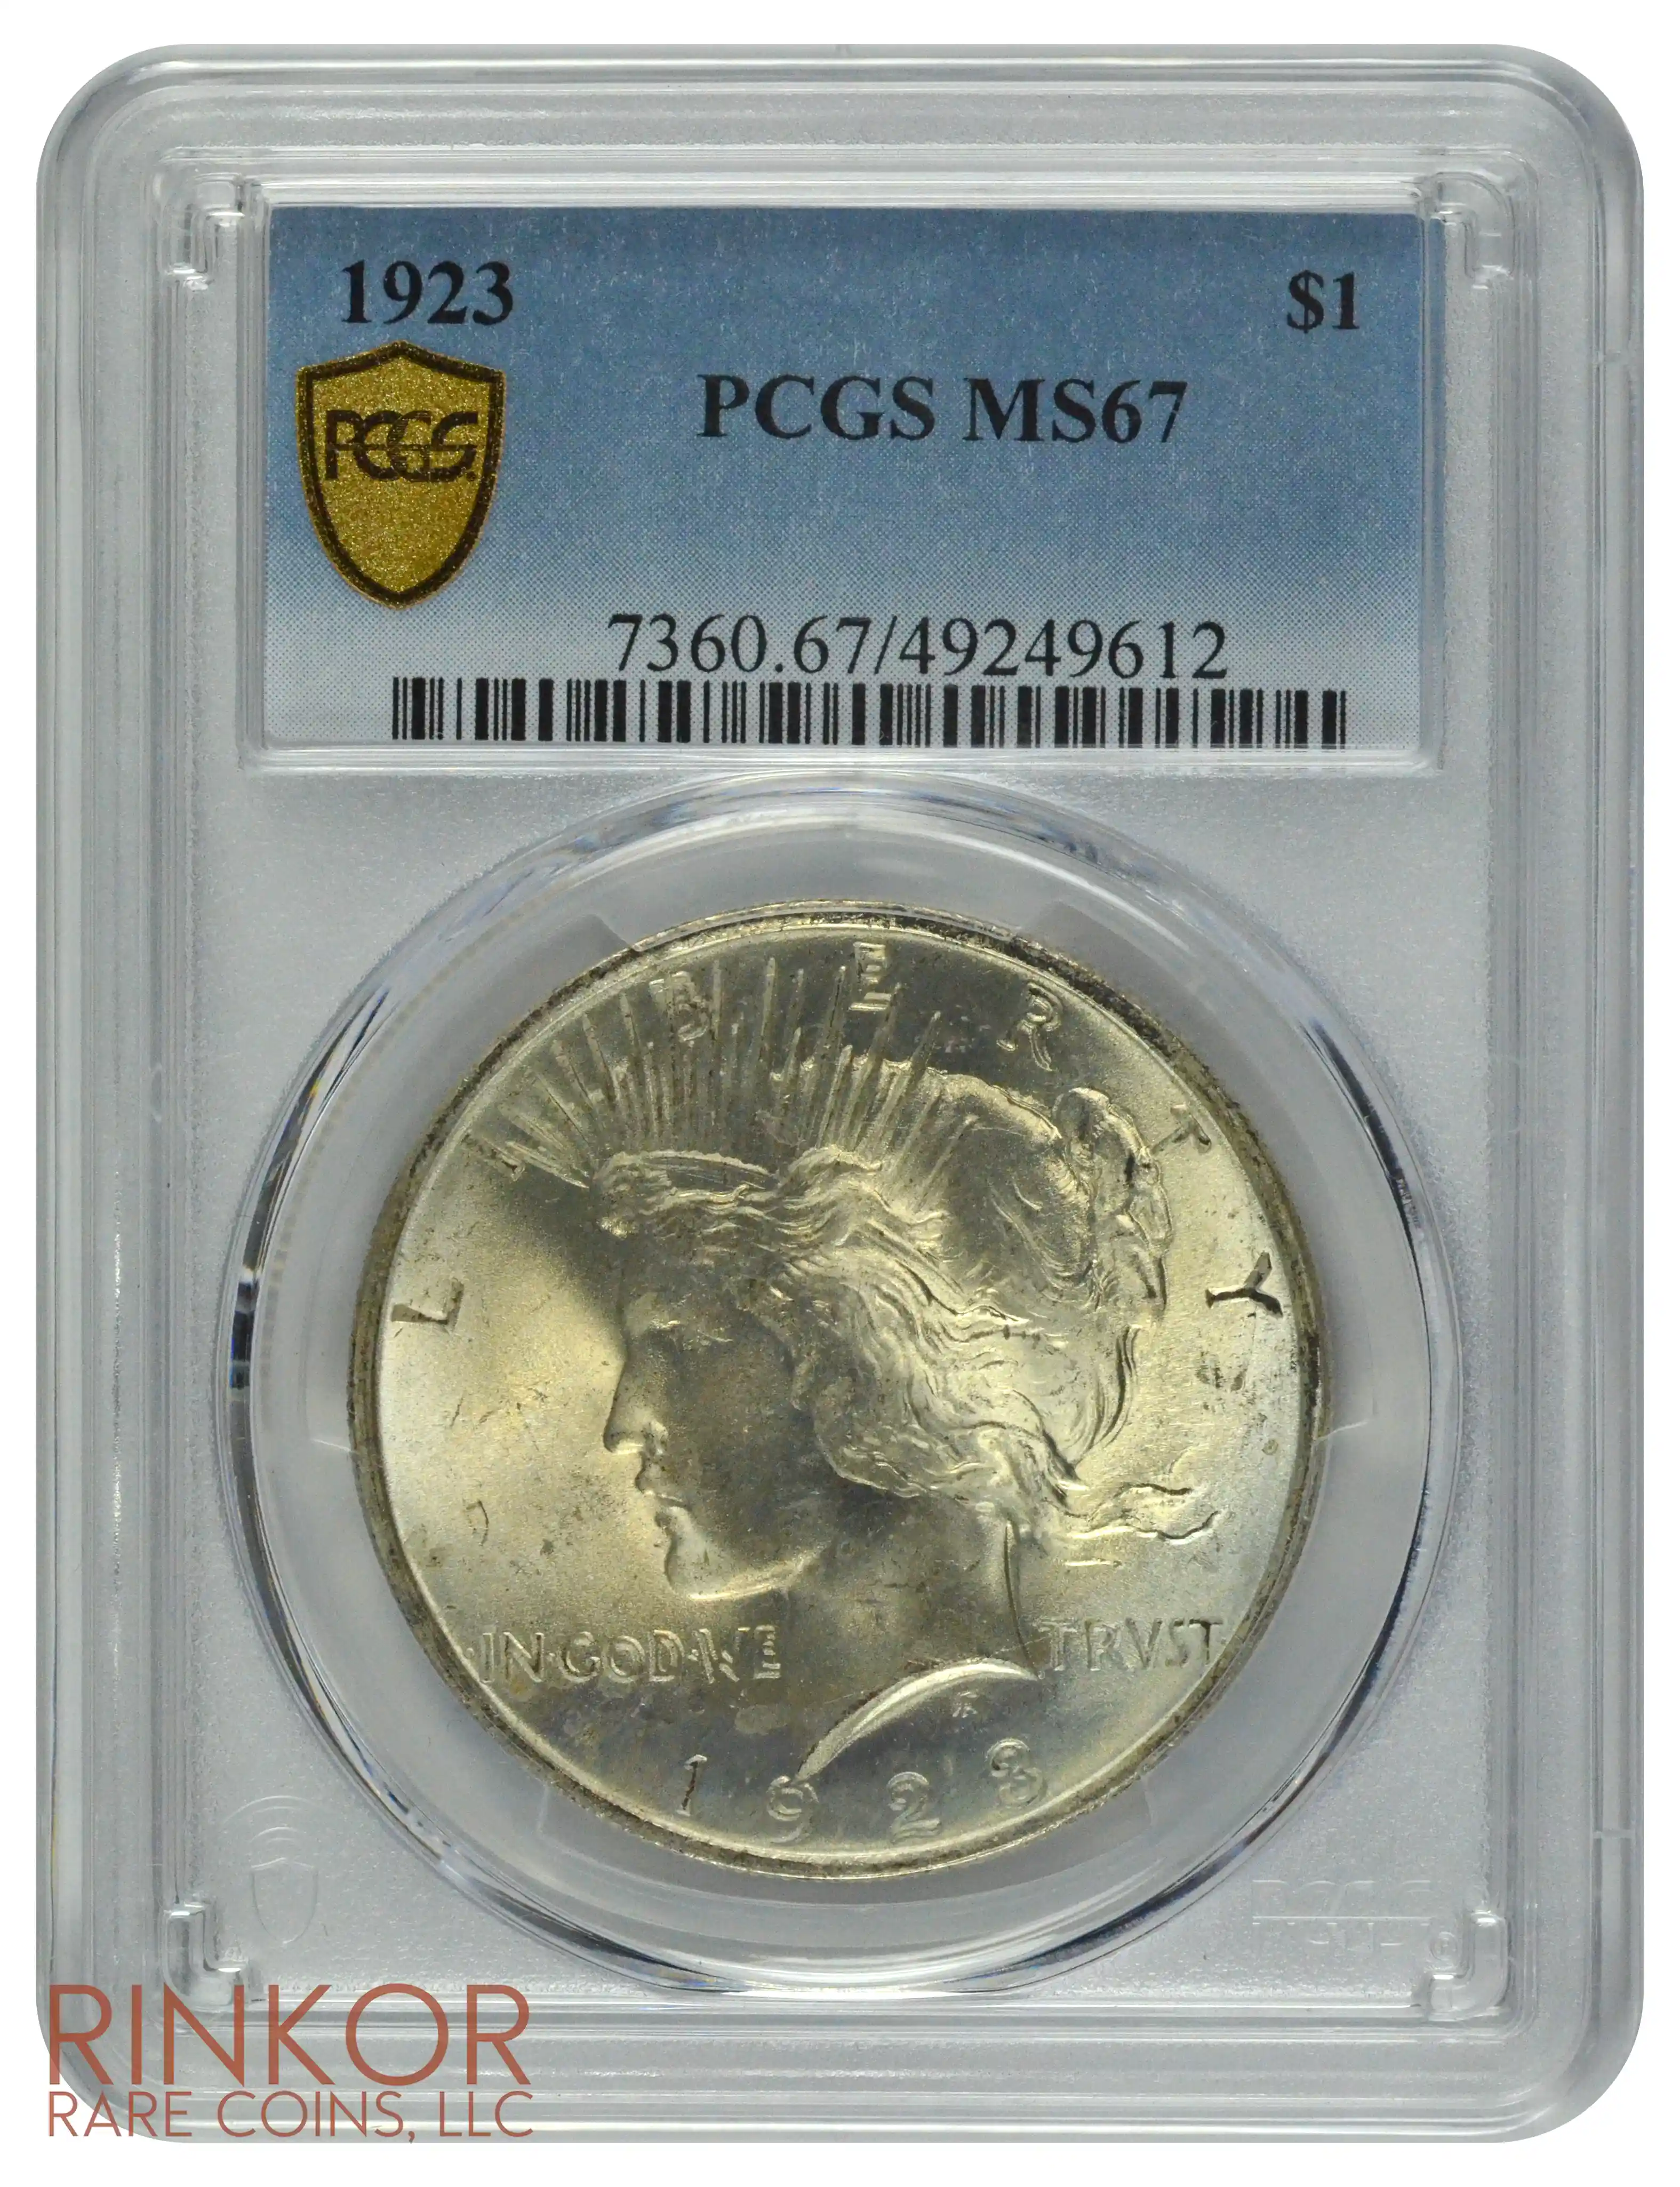 1923 $1 PCGS MS 67